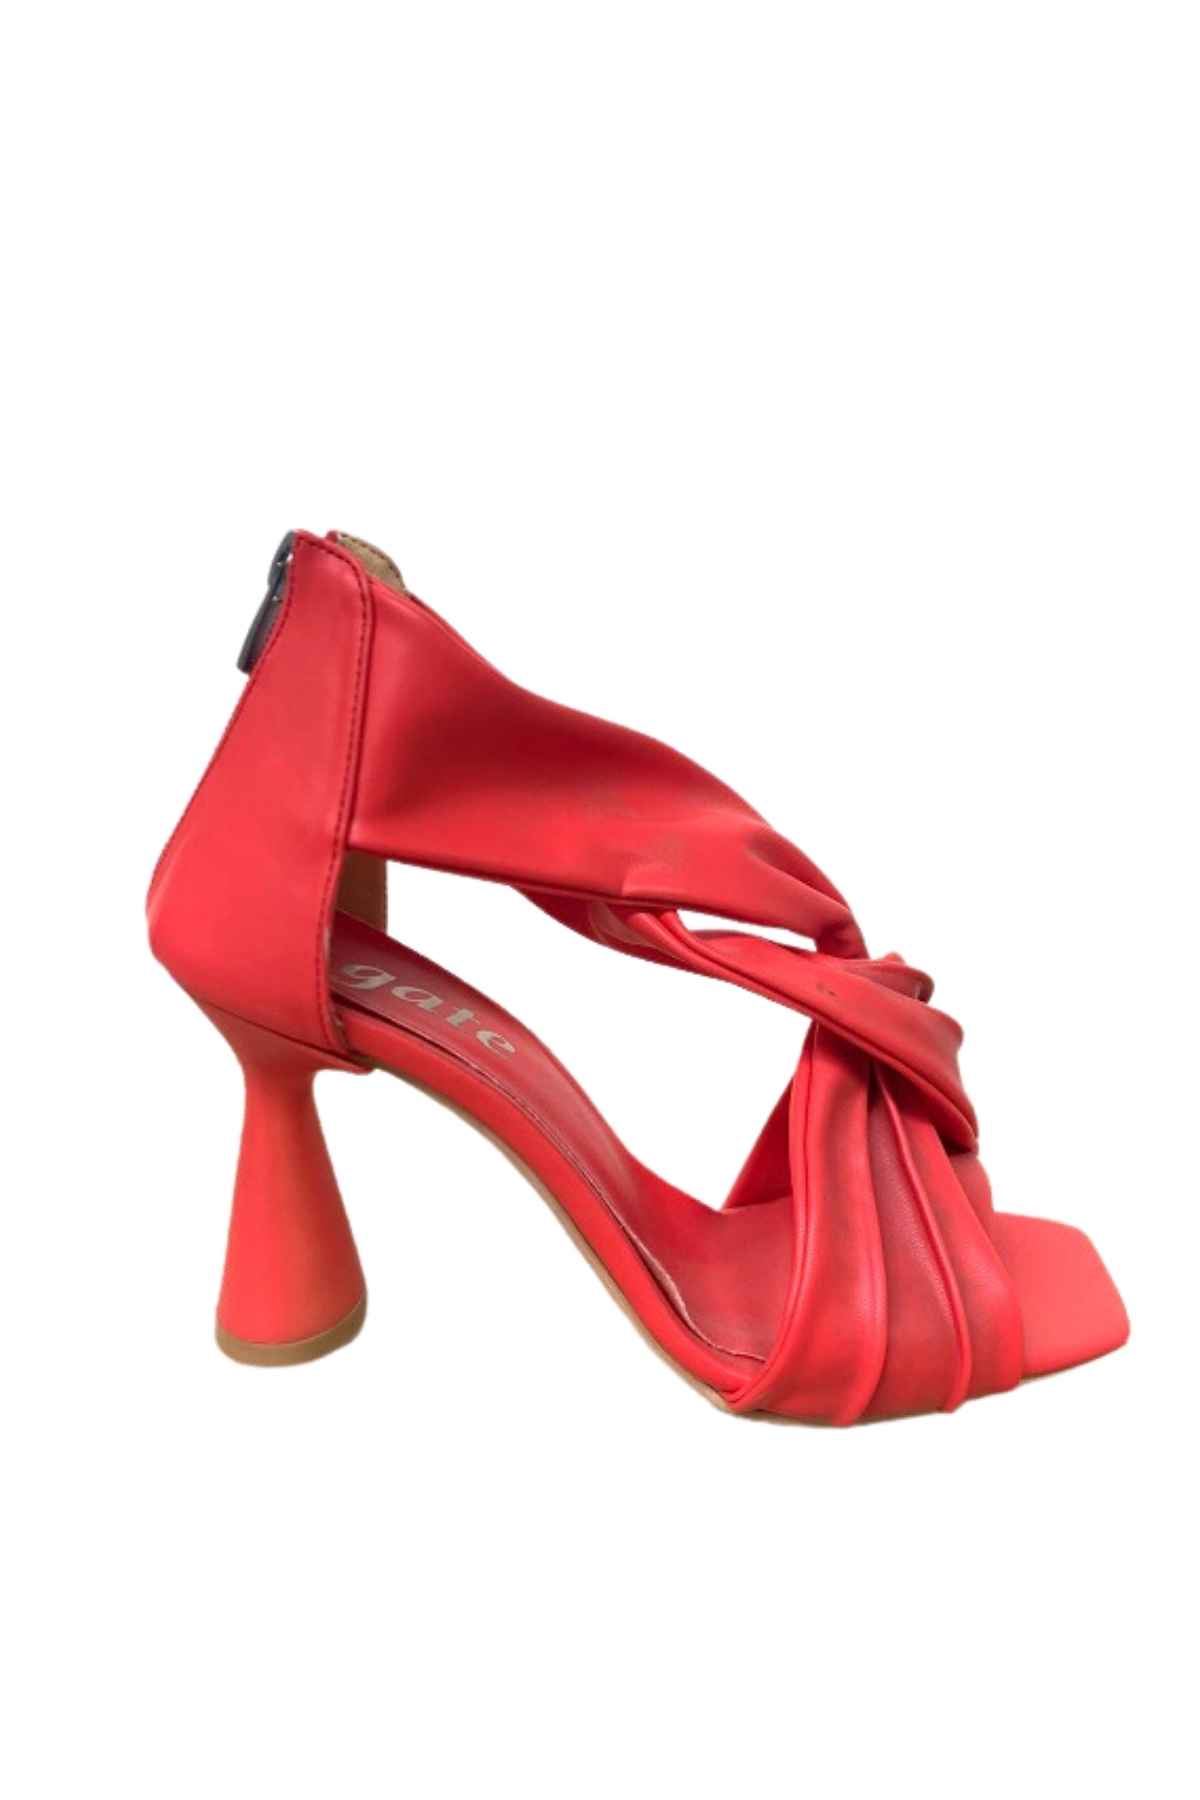 Kadın Arkadan Fermuarlı Topuklu Ayakkabı ZEN438  Gate Shoes-Kırmızı